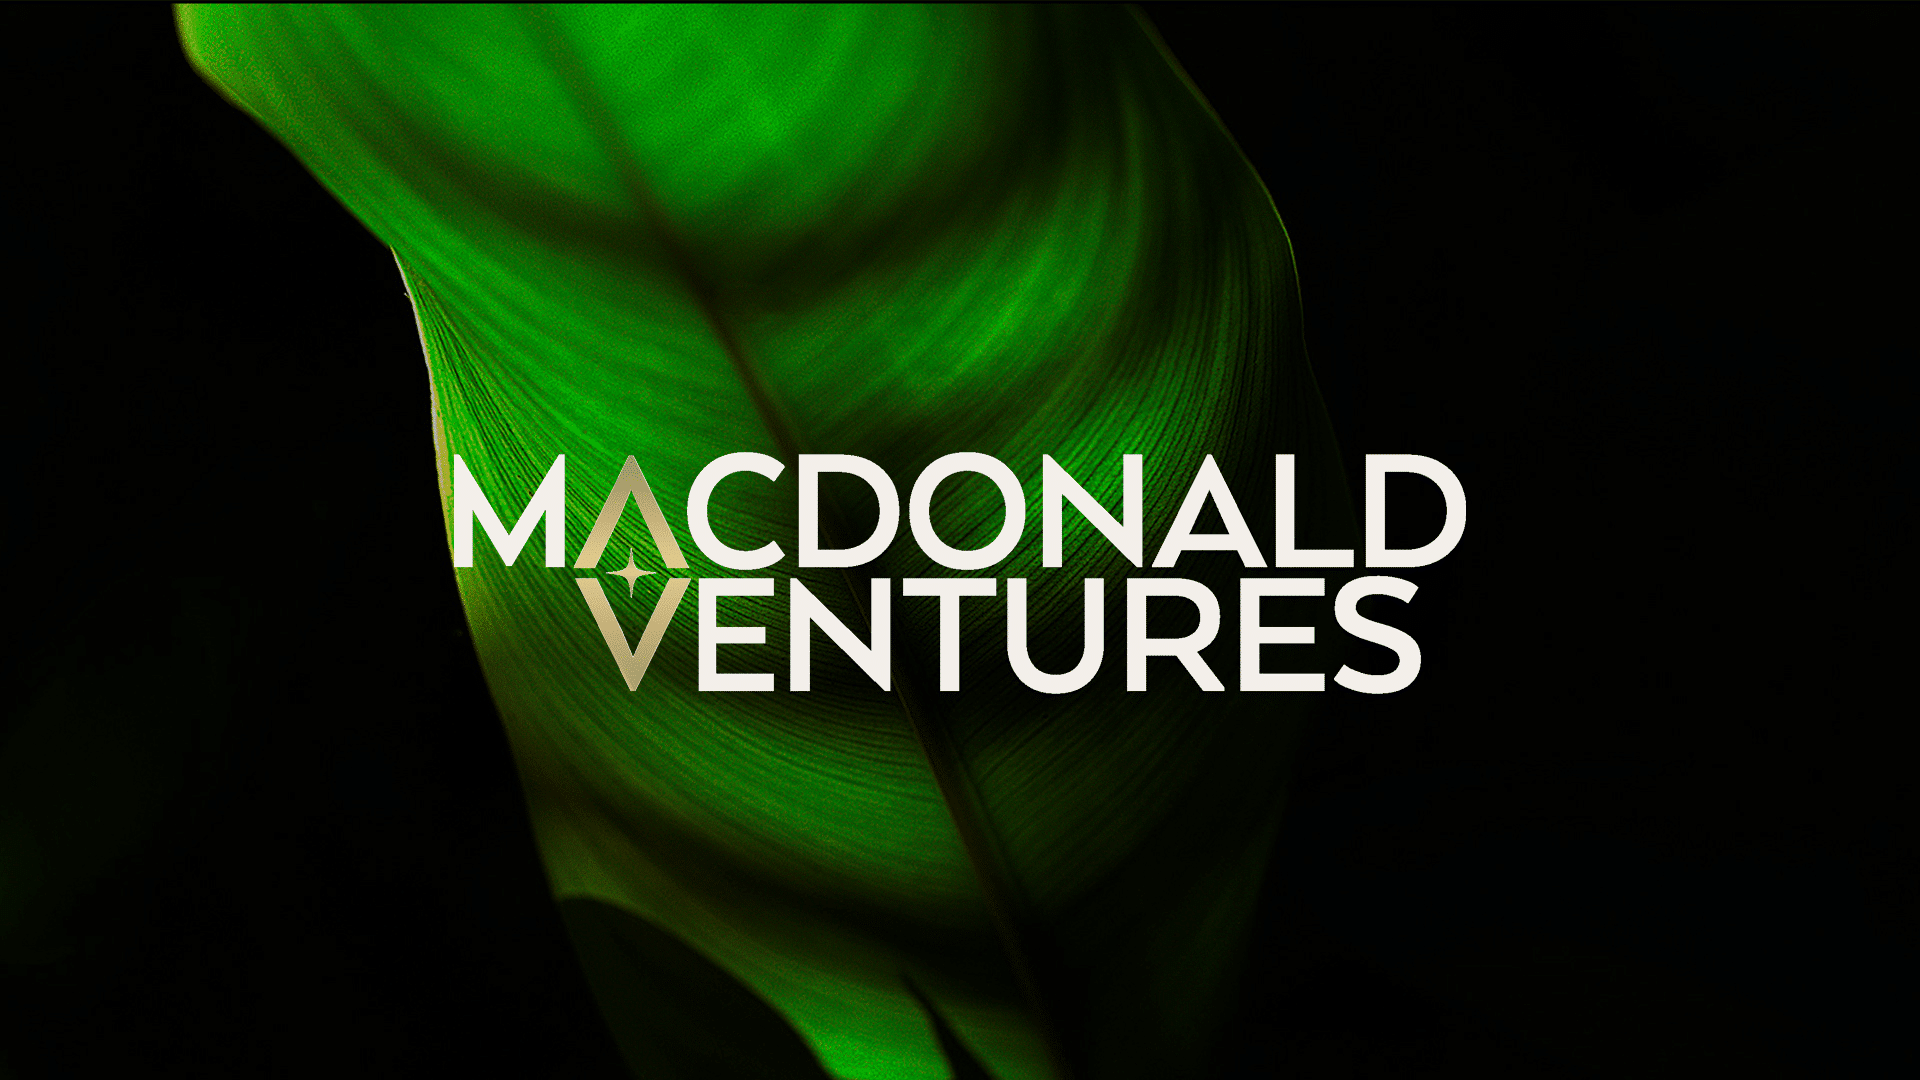 (c) Macdonald.ventures